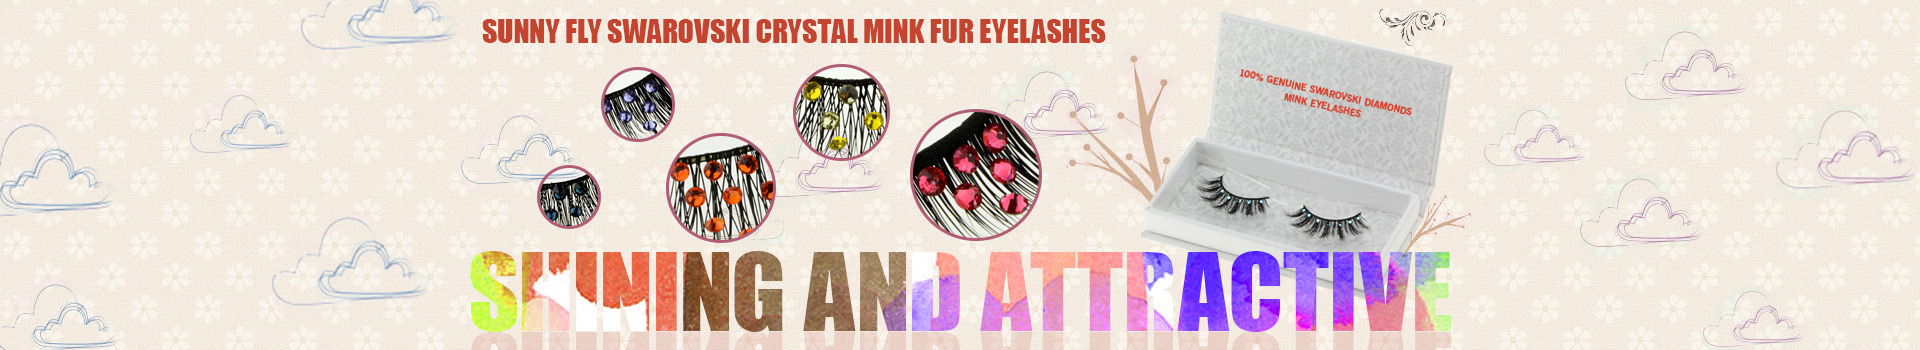 Swarovski Crystal Mink Fur Eyelashes MS33